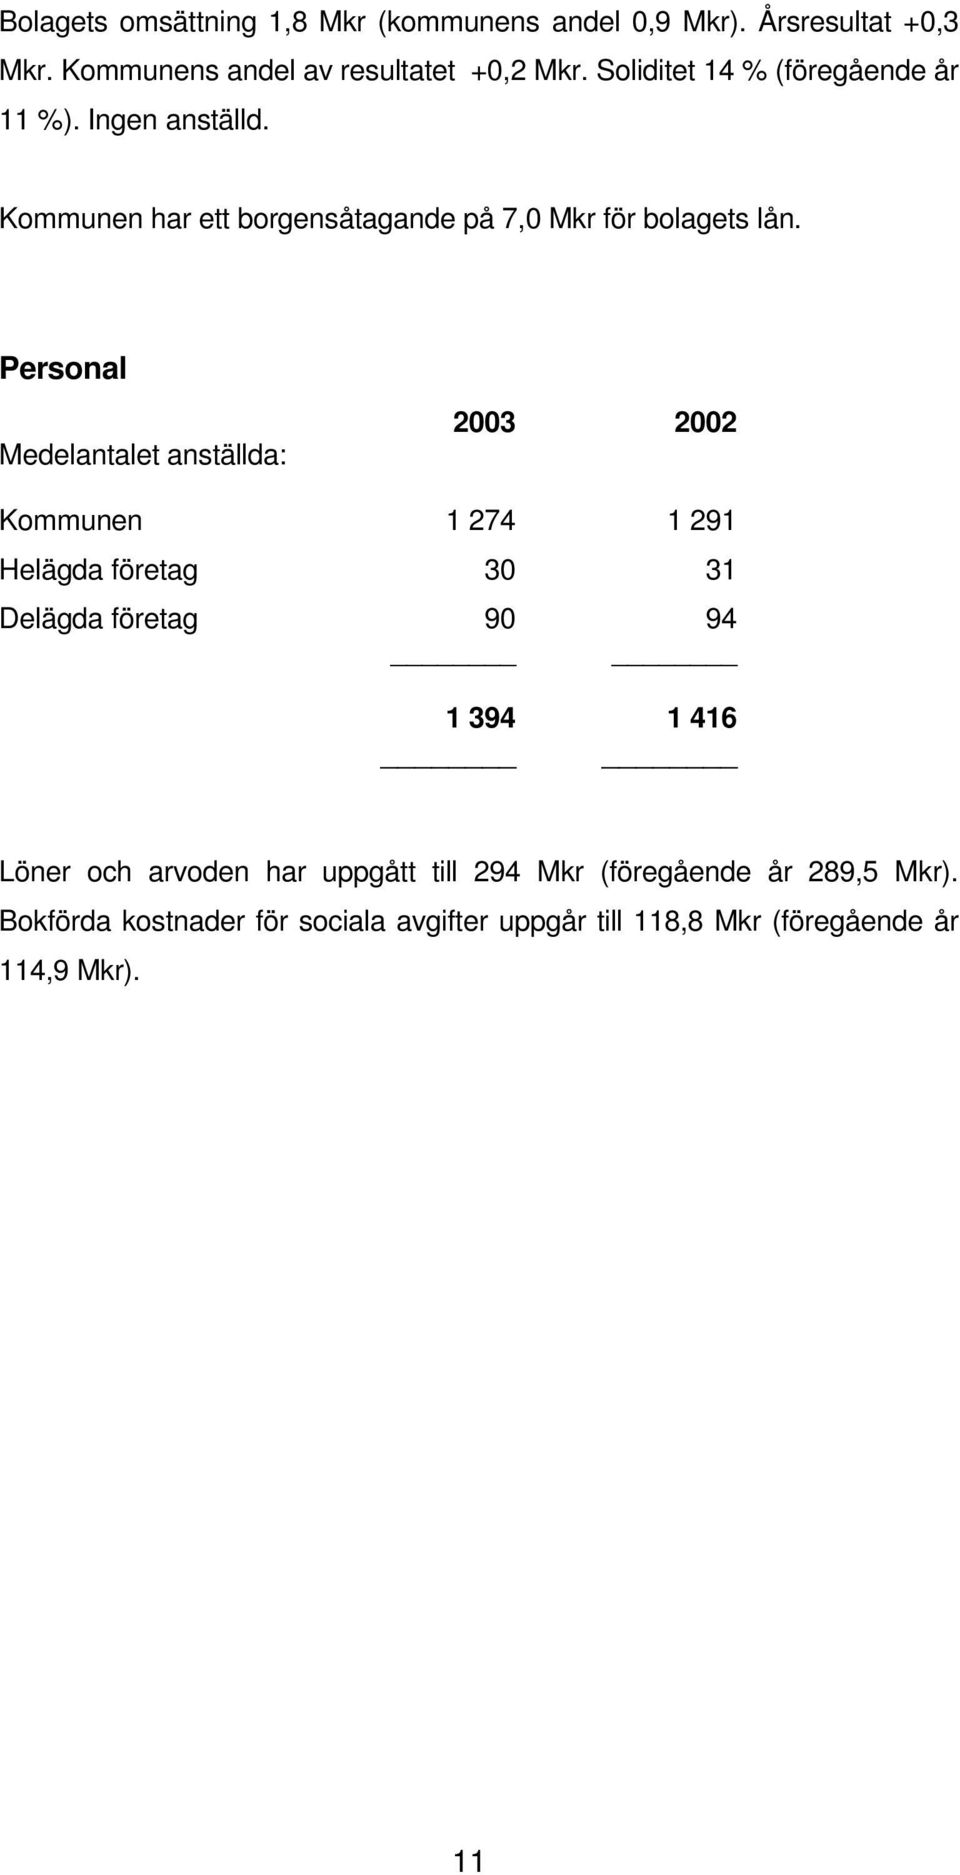 Personal Medelantalet anställda: 2003 2002 Kommunen 1 274 1 291 Helägda företag 30 31 Delägda företag 90 94 1 394 1 416 Löner